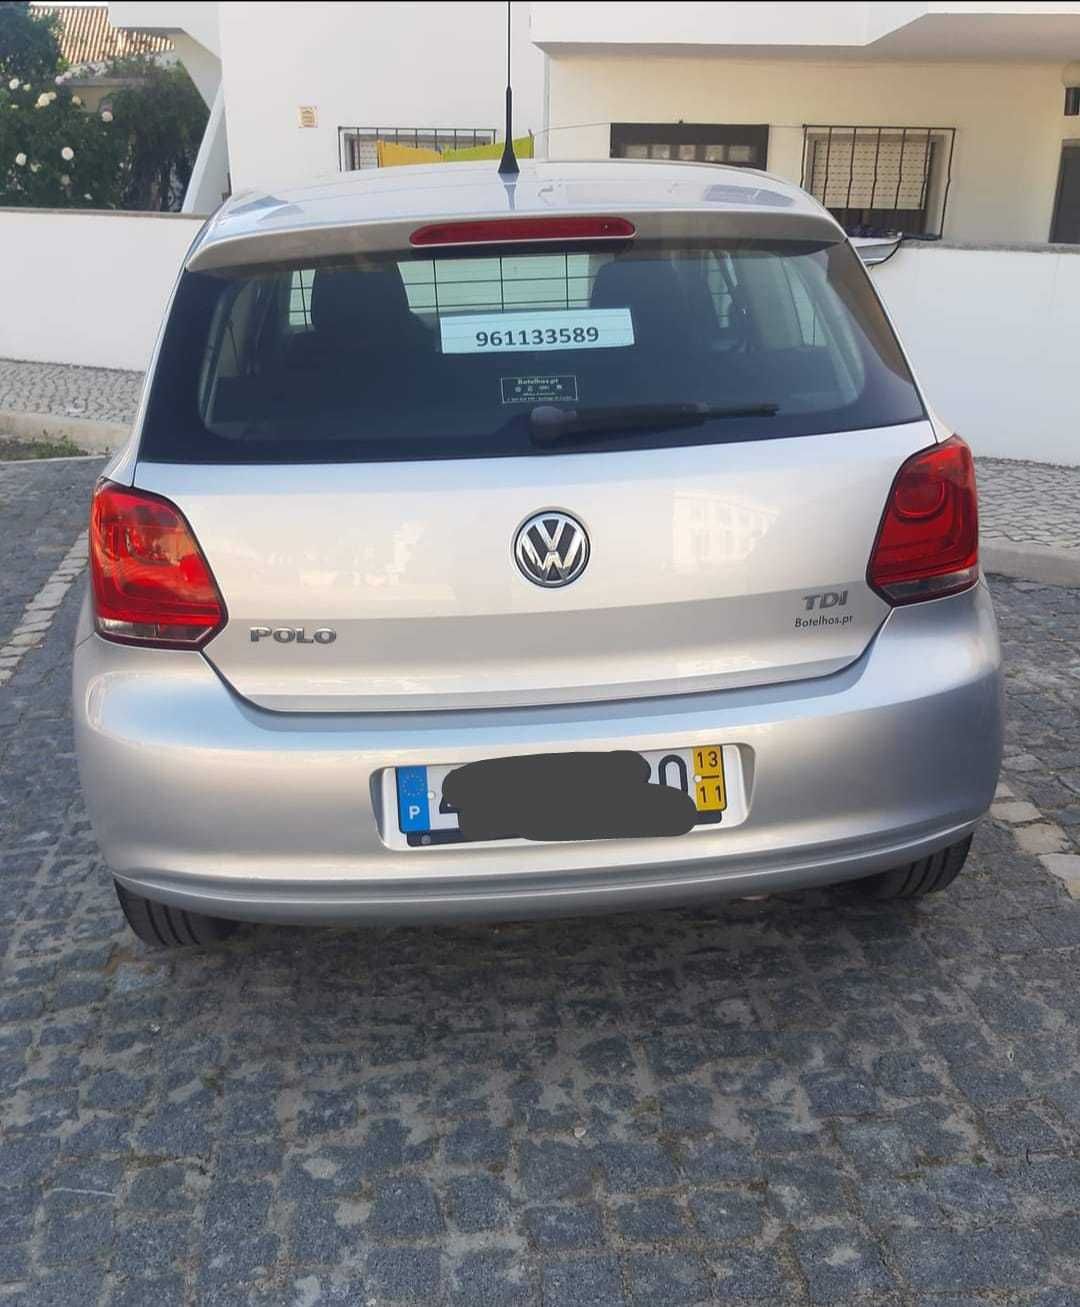 VW Polo Comercial 2 Lugares